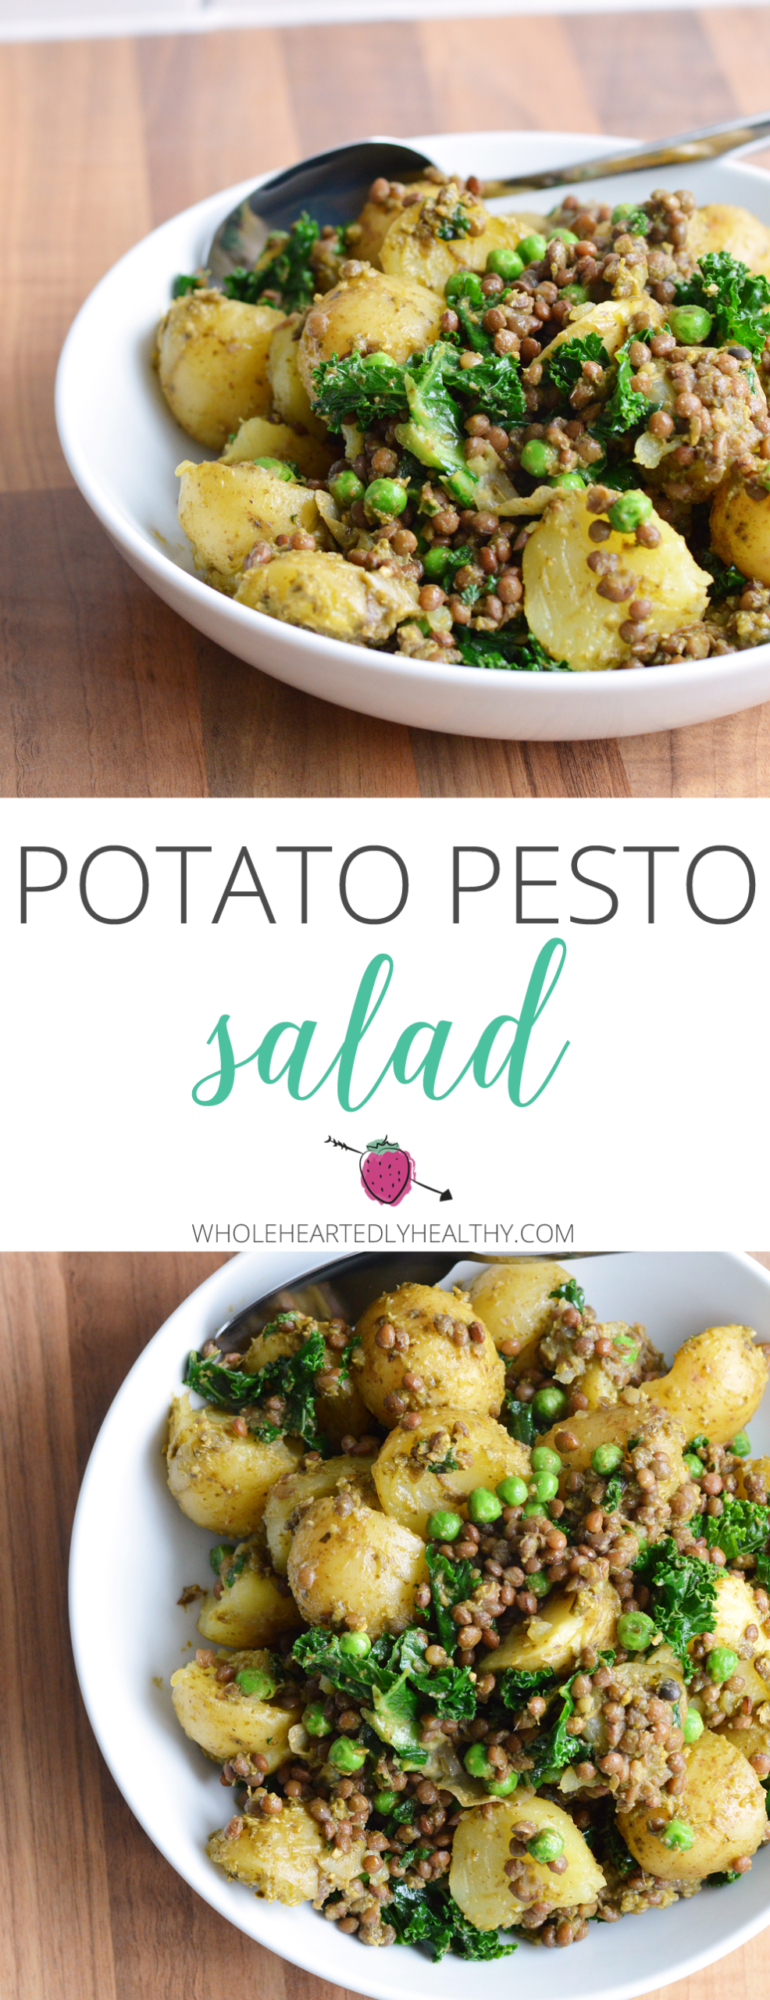 Potato pesto salad